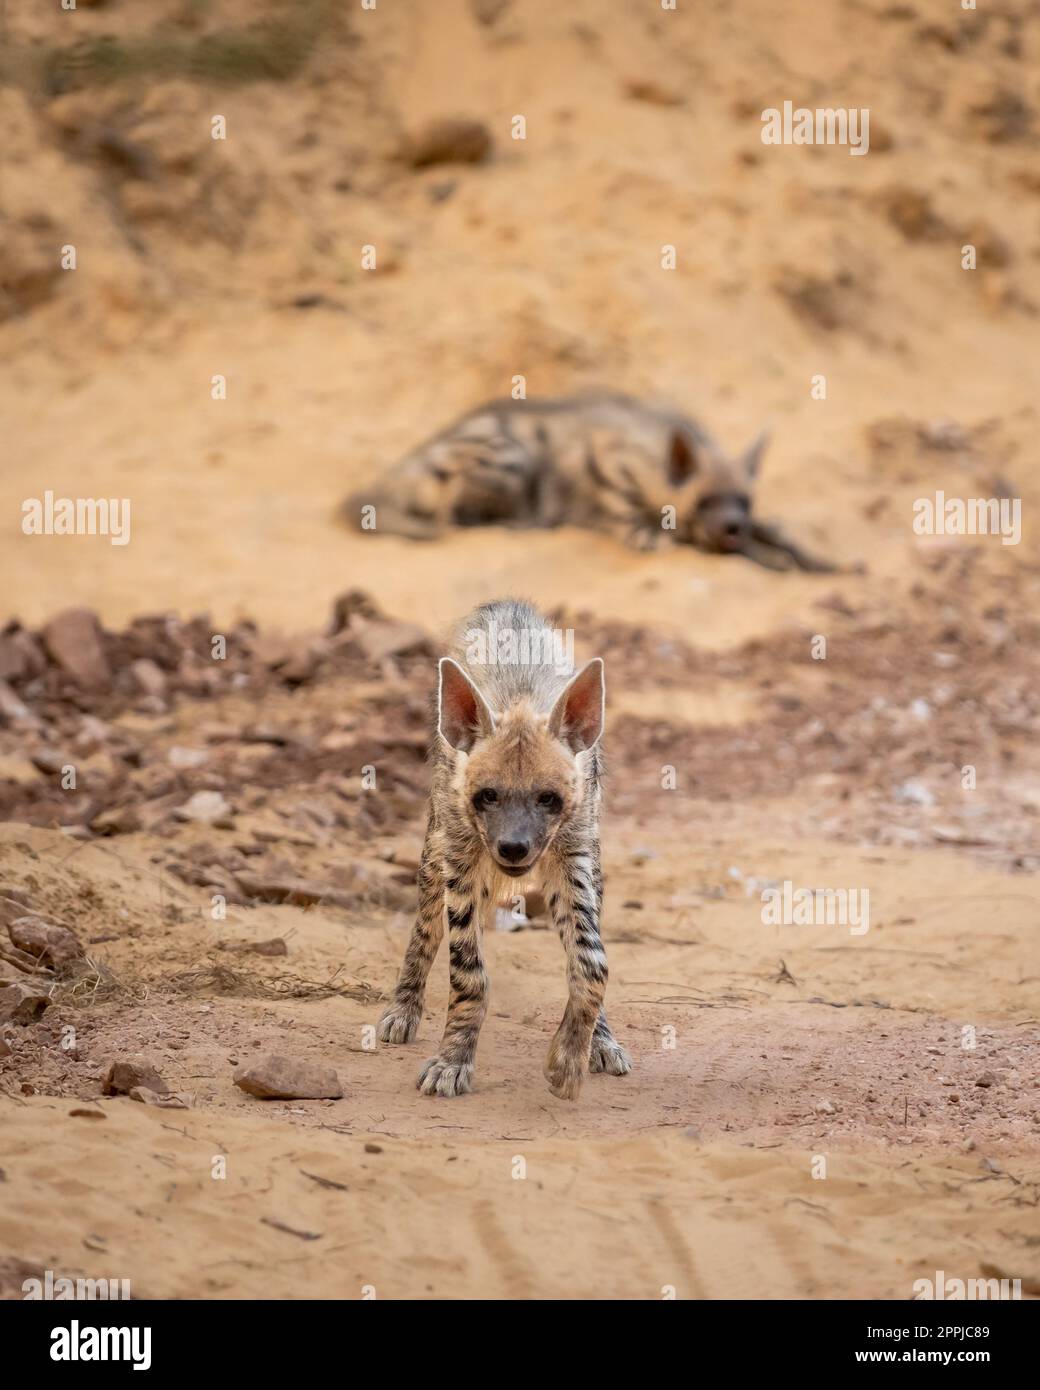 Wild Striped hyena o hyena testa con aggressività e contatto con gli occhi durante il safari all'aperto nella giungla nel parco nazionale ranthambore rajasthan india Foto Stock